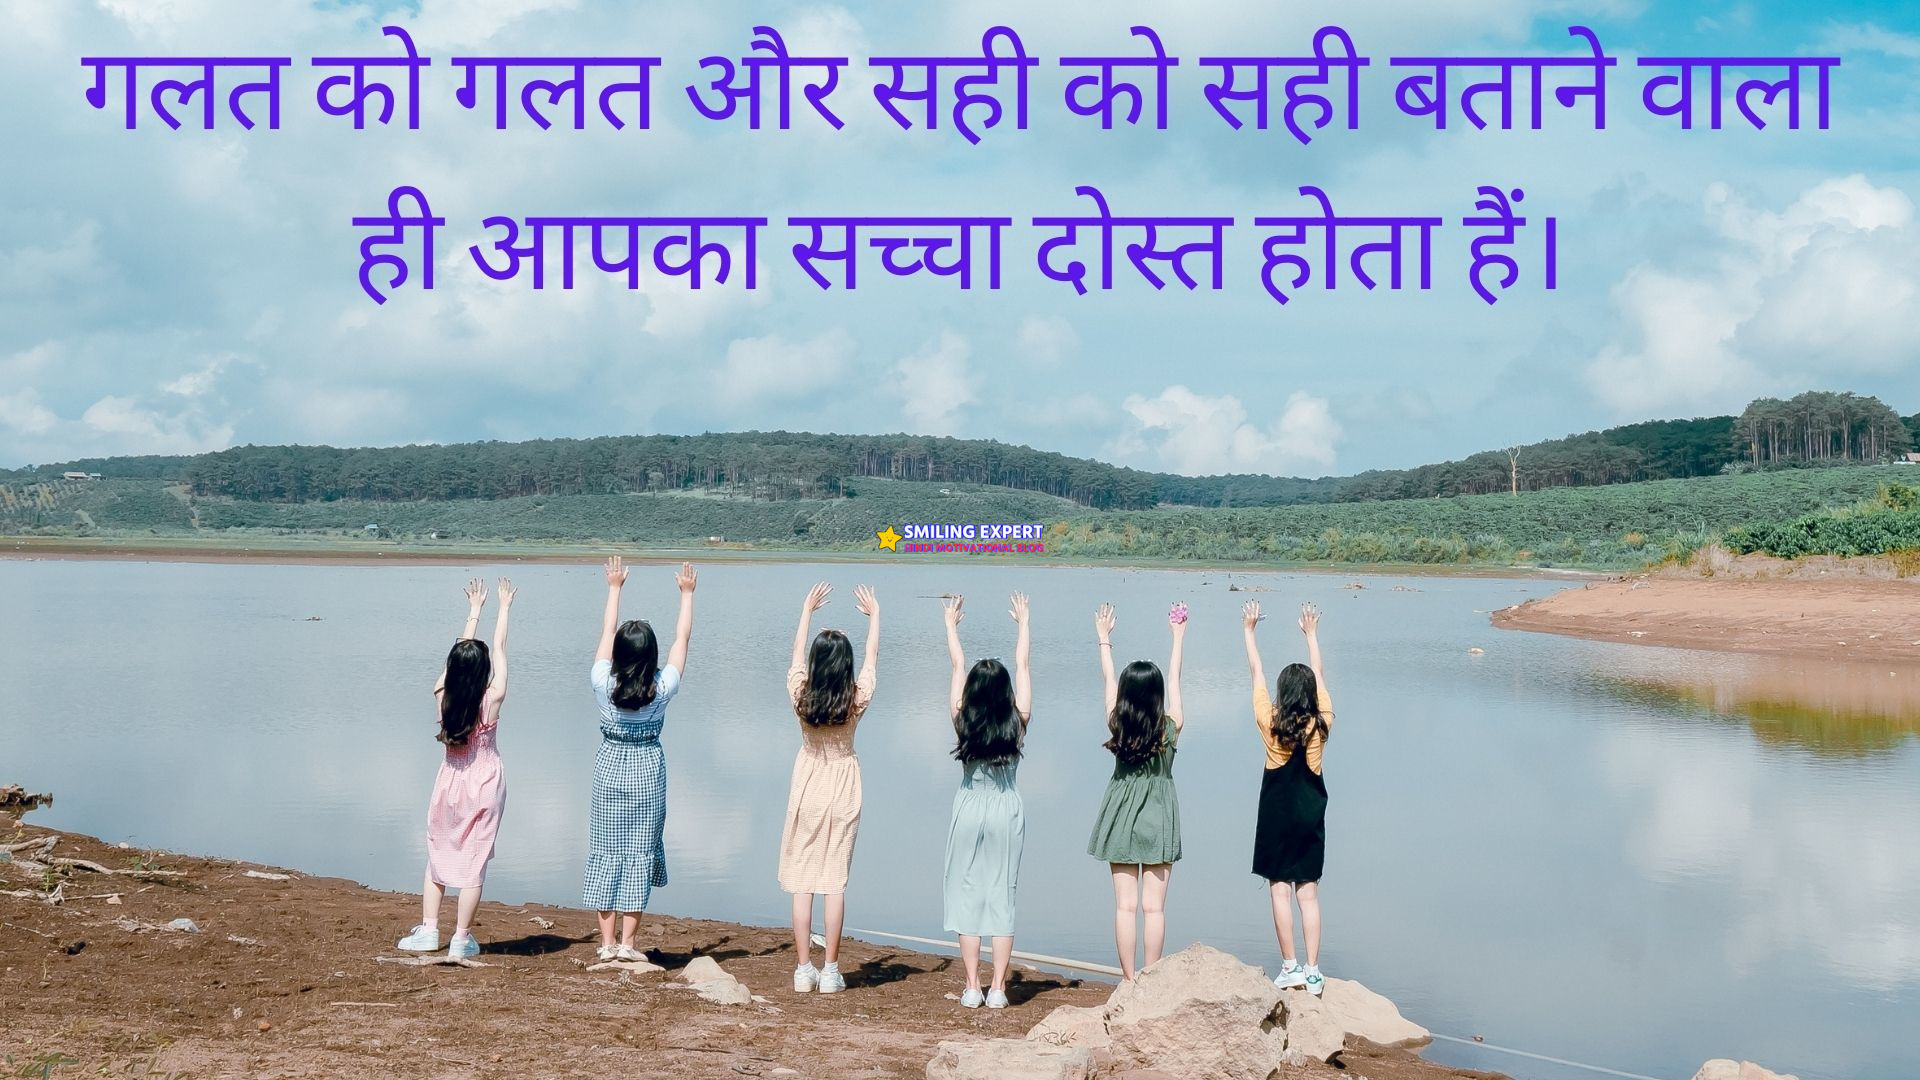 friends quotes in hindi shayari